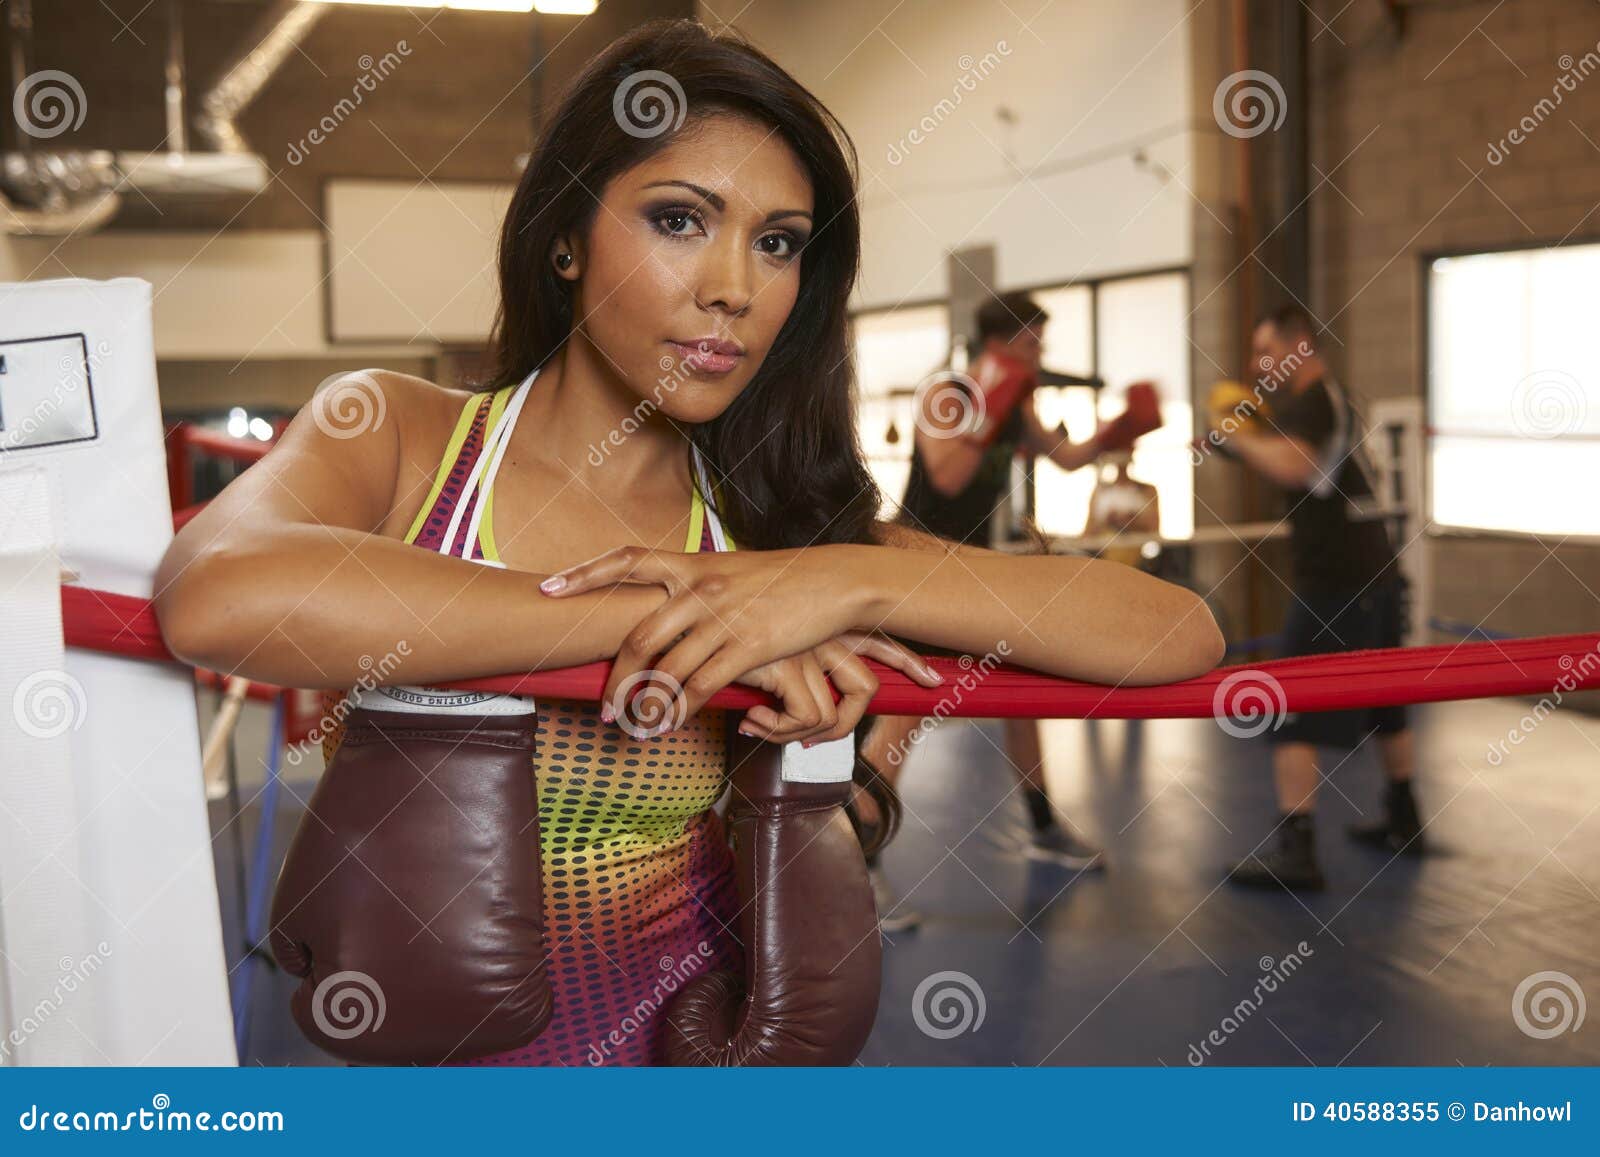 Latina Beauty Boxing Stock Image Image Of Lifestyle 40588355